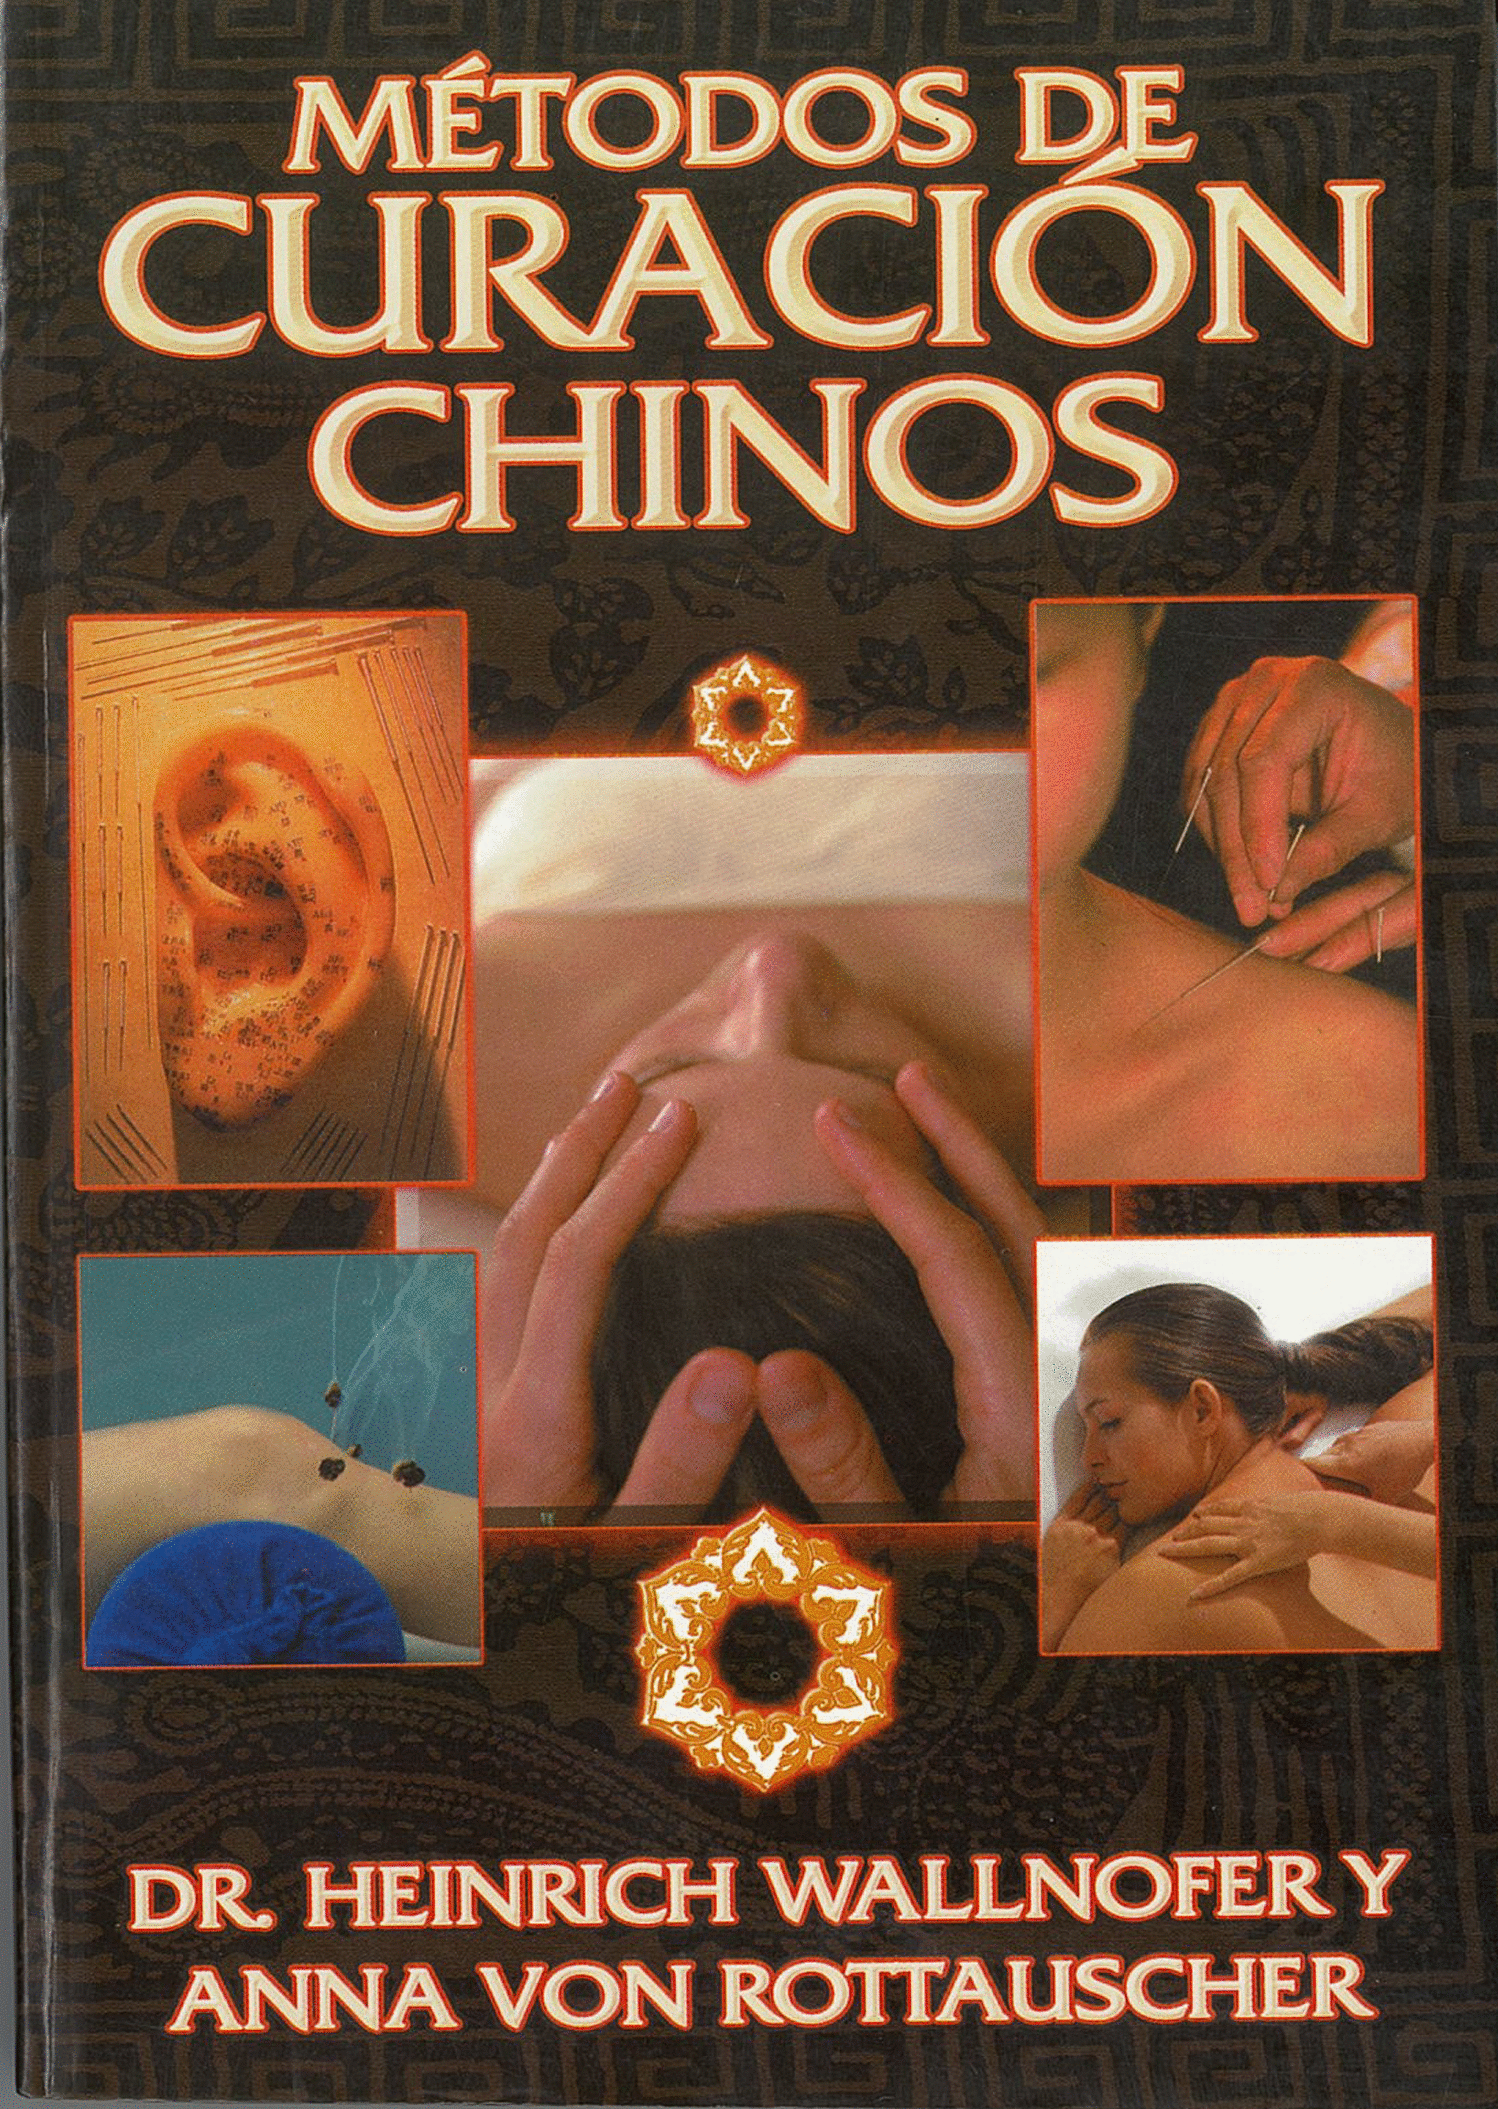 METODOS DE CURACION CHINOS